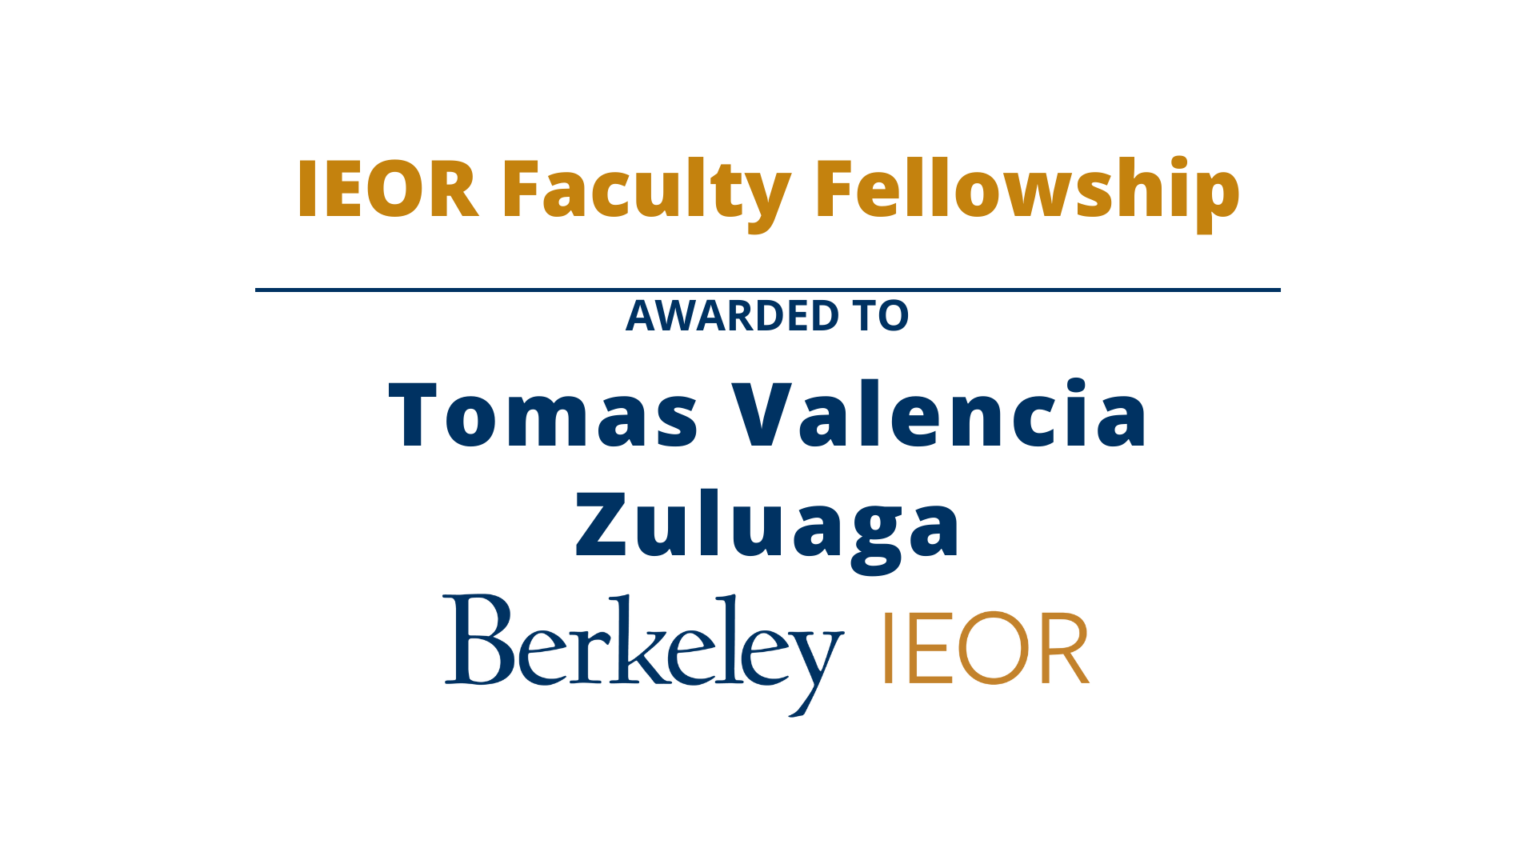 Tomas Valencia Zuluaga, IEOR Faculty Fellowship Recipient